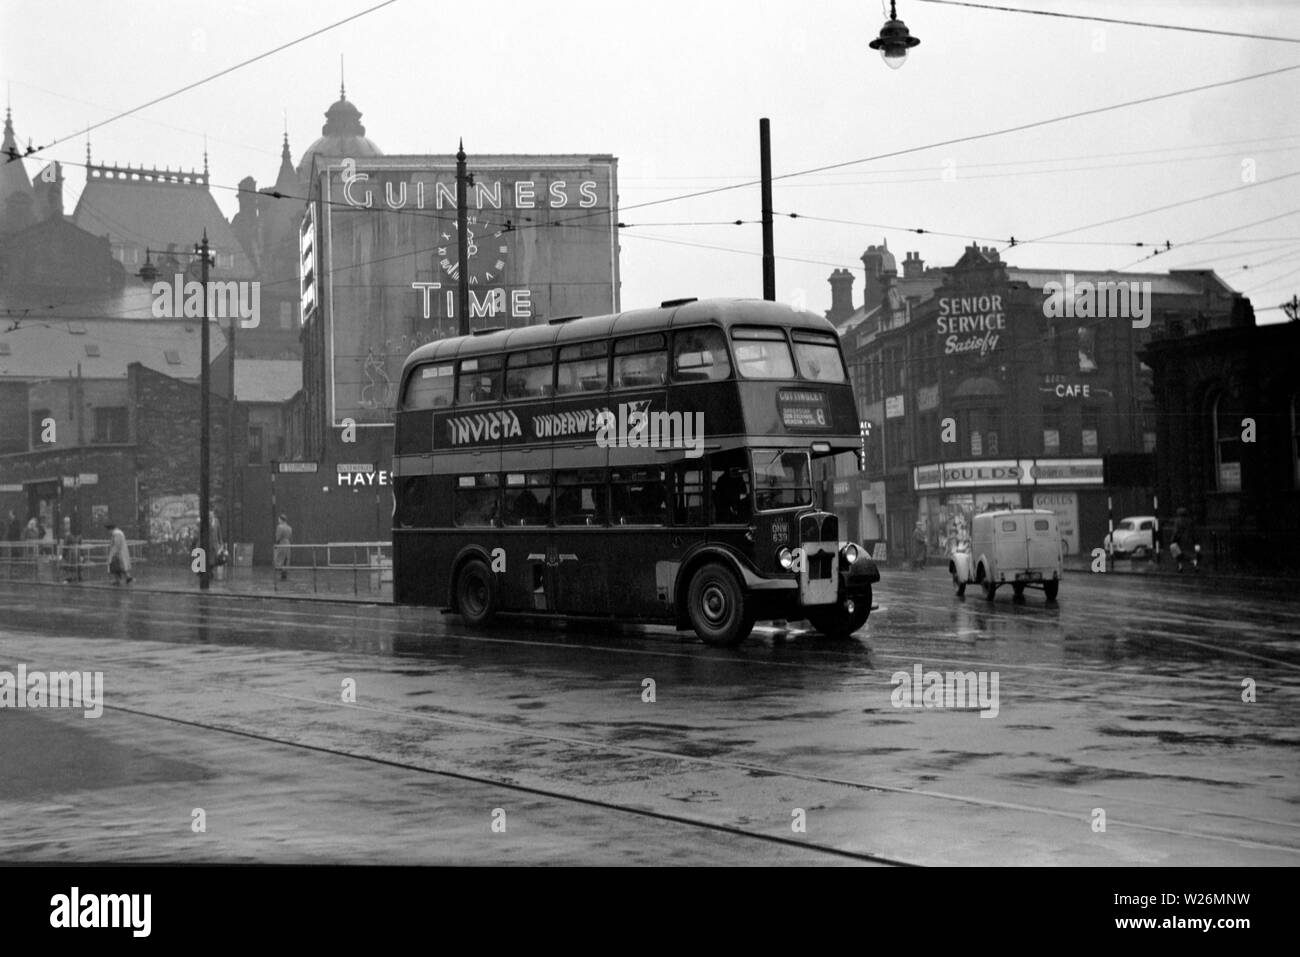 Ein Regentag in der Nähe der Corn Exchange in Leeds City Centre. Das Bild zeigt ein Reh Bodied AEC Regent III Double Decker Bus auf dem Weg nach cottingley. Das Fahrzeug würde neue 1950 wurden. Hinweis Der alte Guinness Uhr Werbung im Hintergrund. Stockfoto